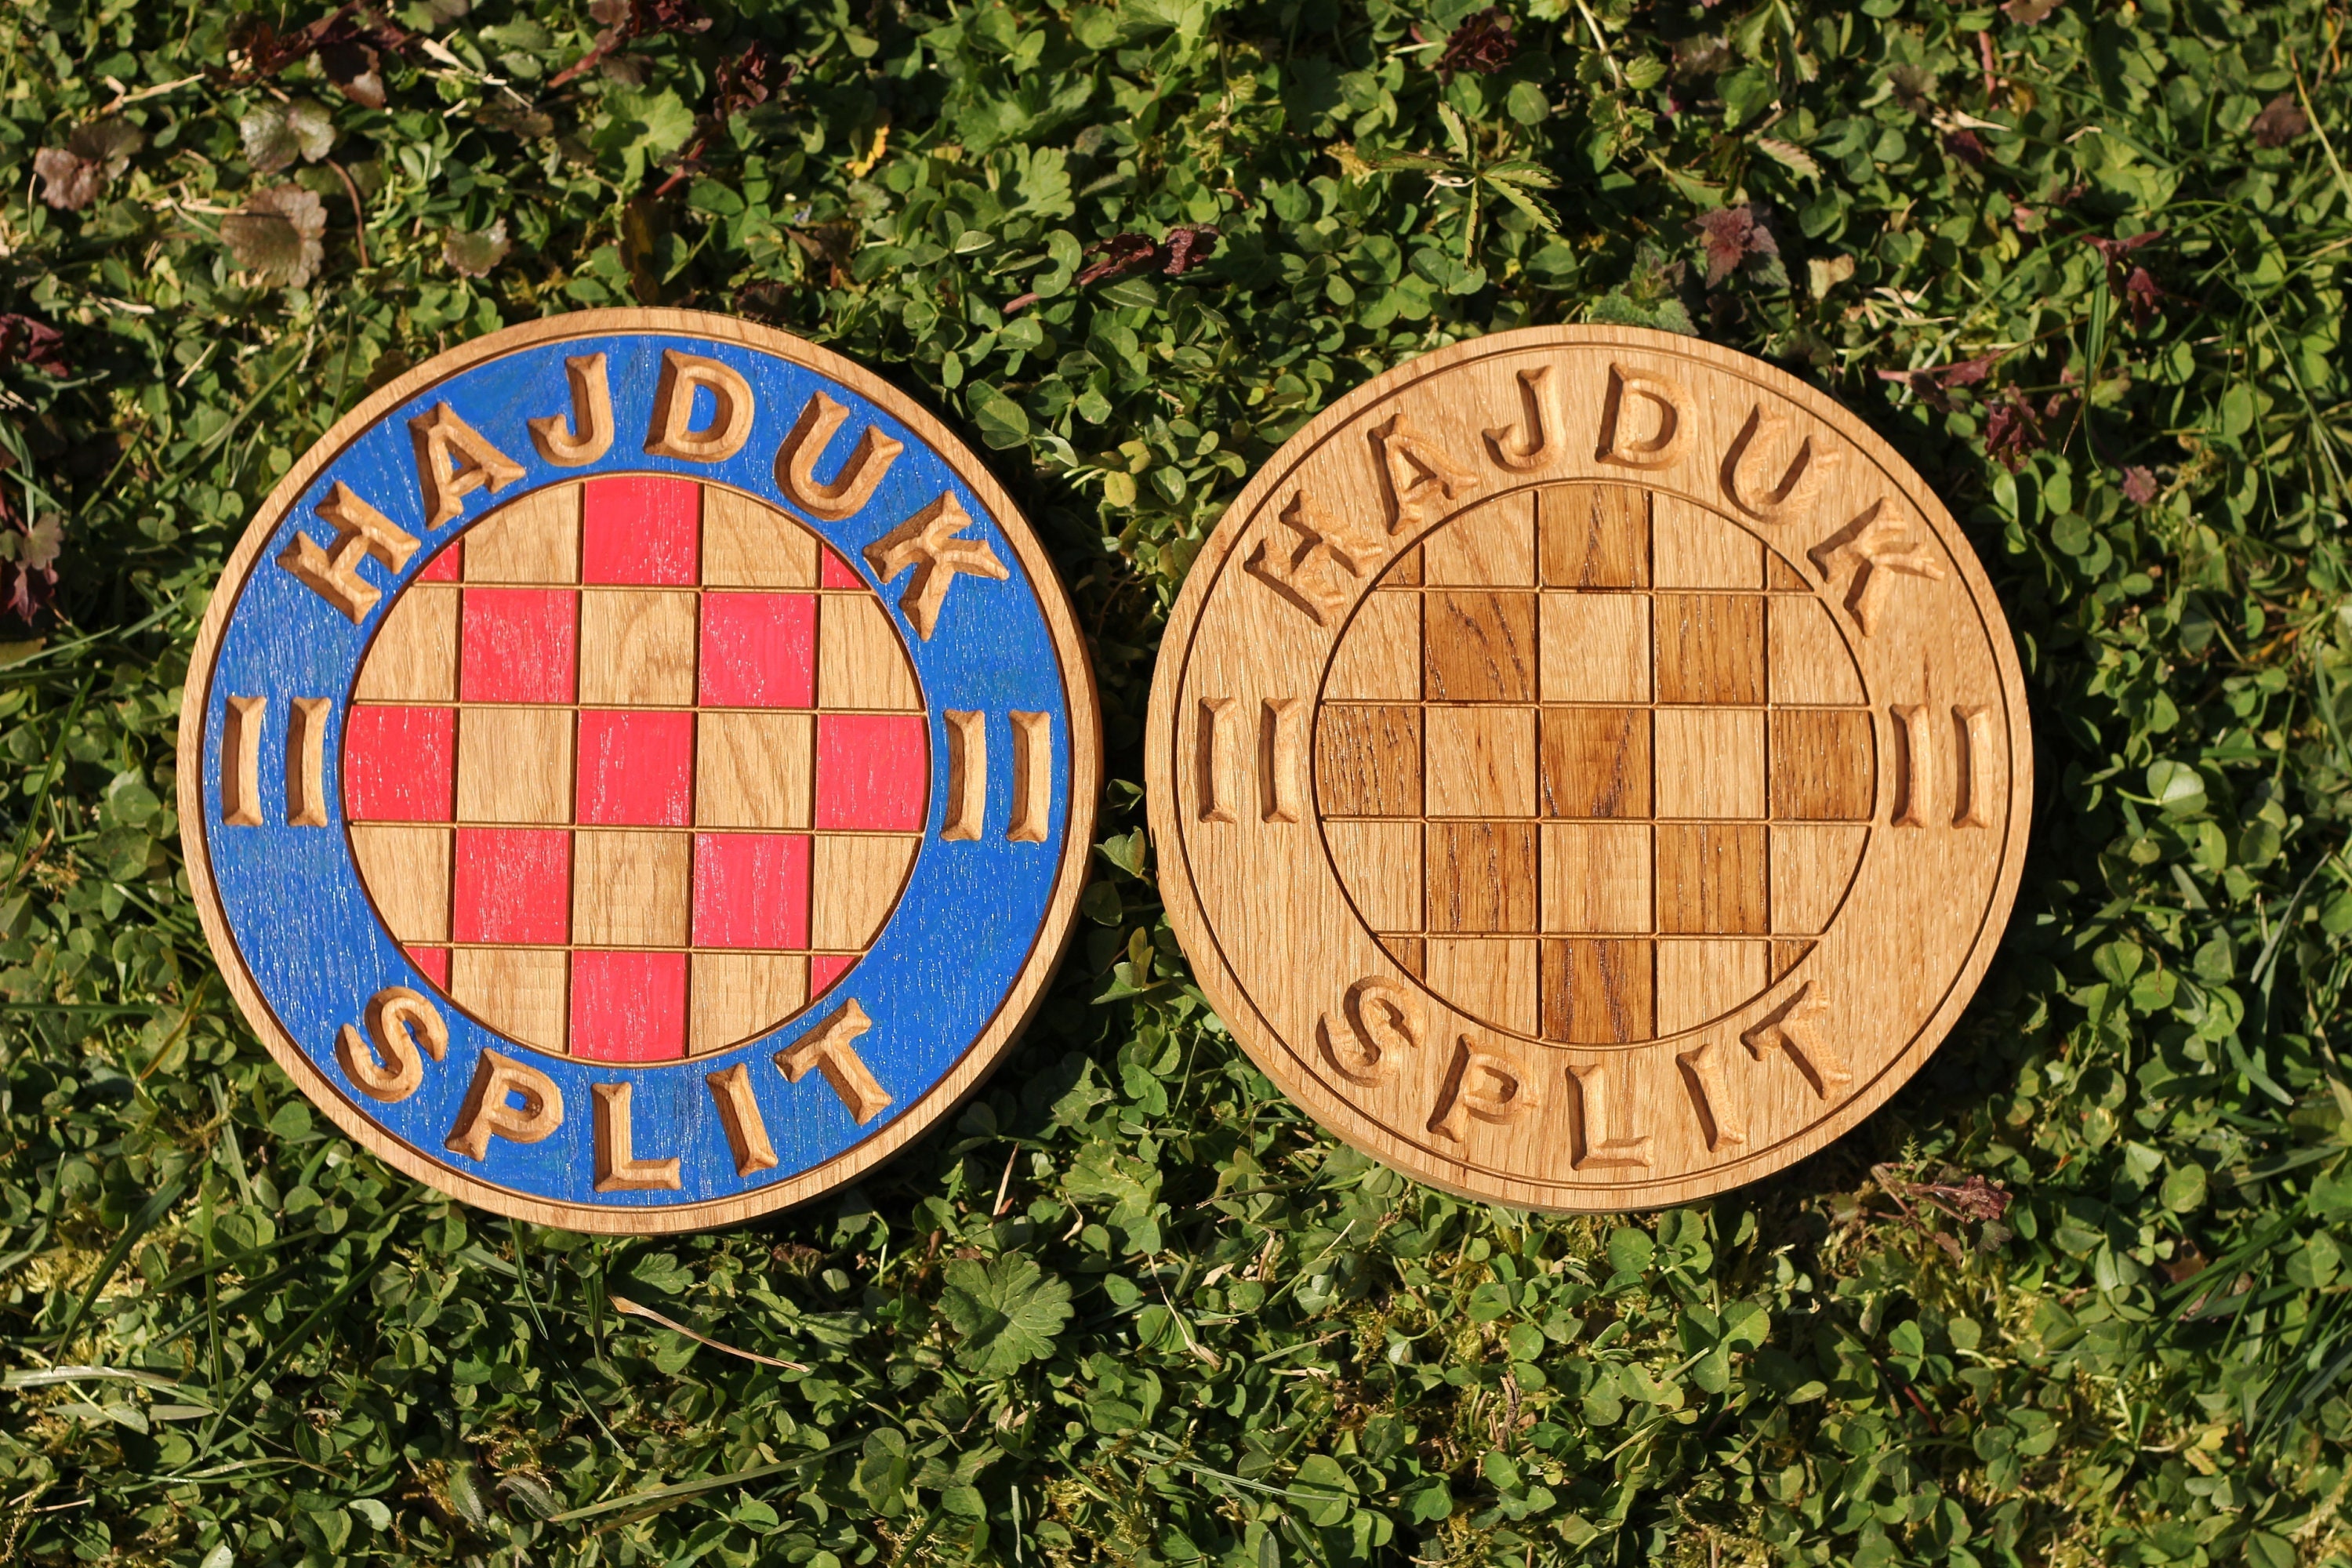 Coat of arms FC Hajduk, Split, Croatia, on a concrete background